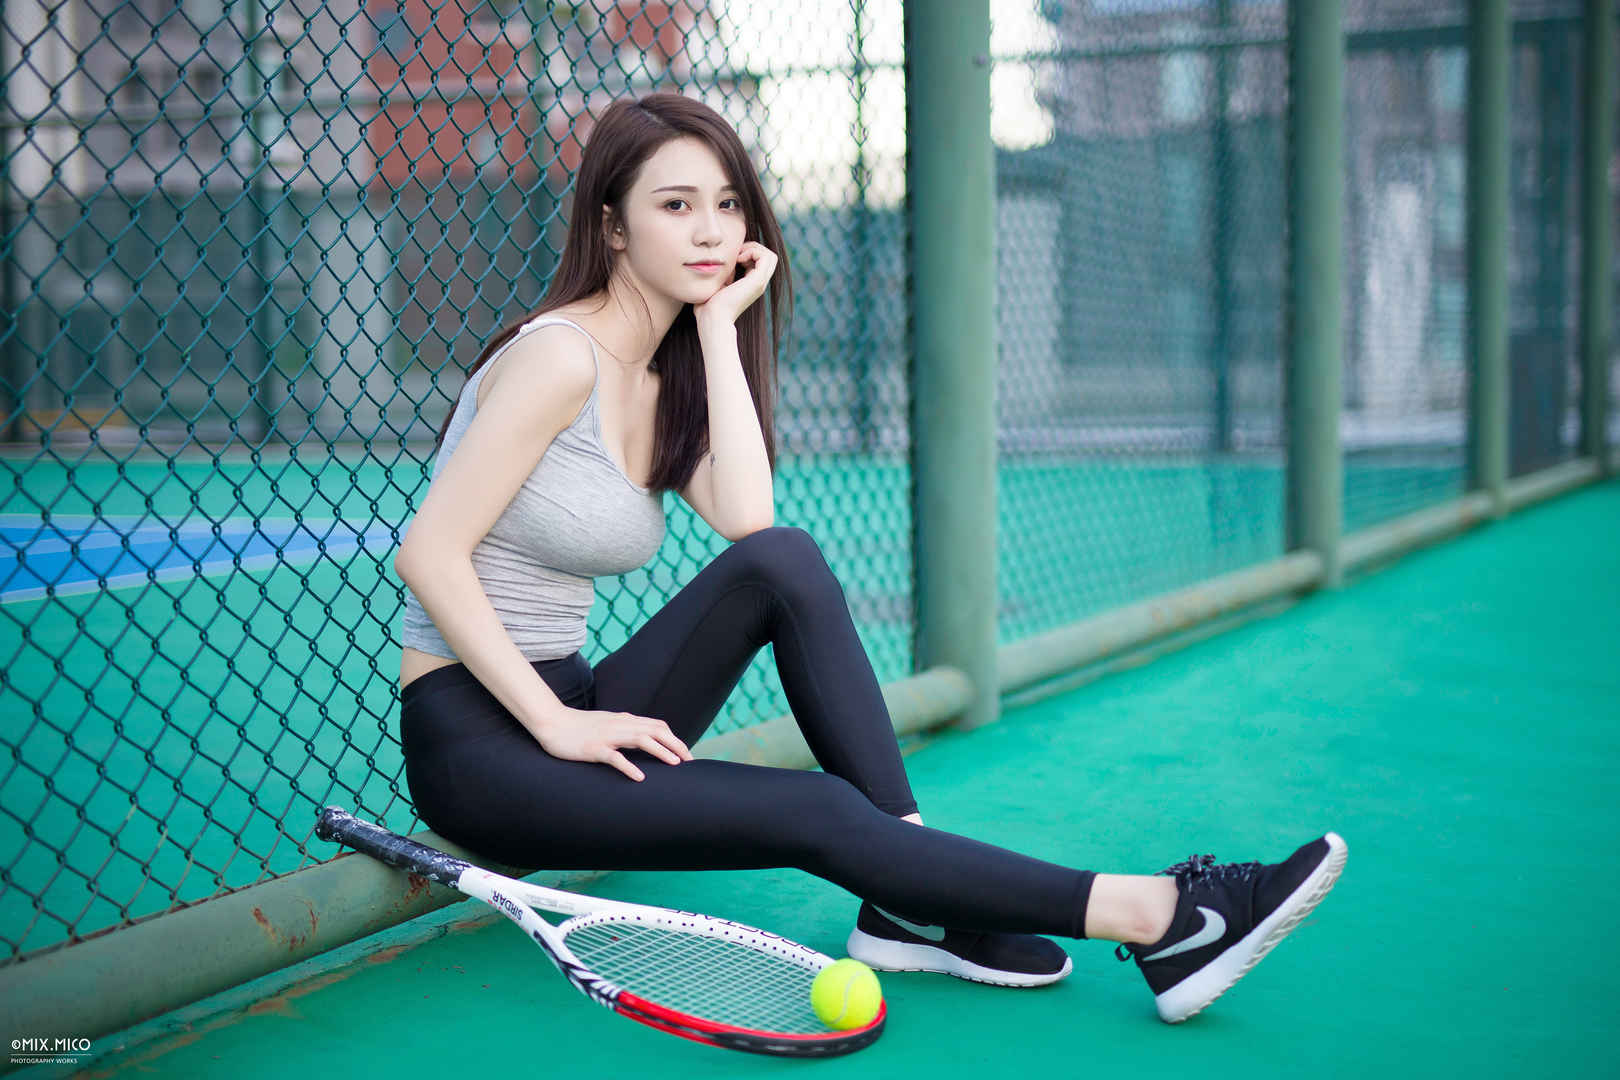 坐在网球场运动型清纯美女4k壁纸